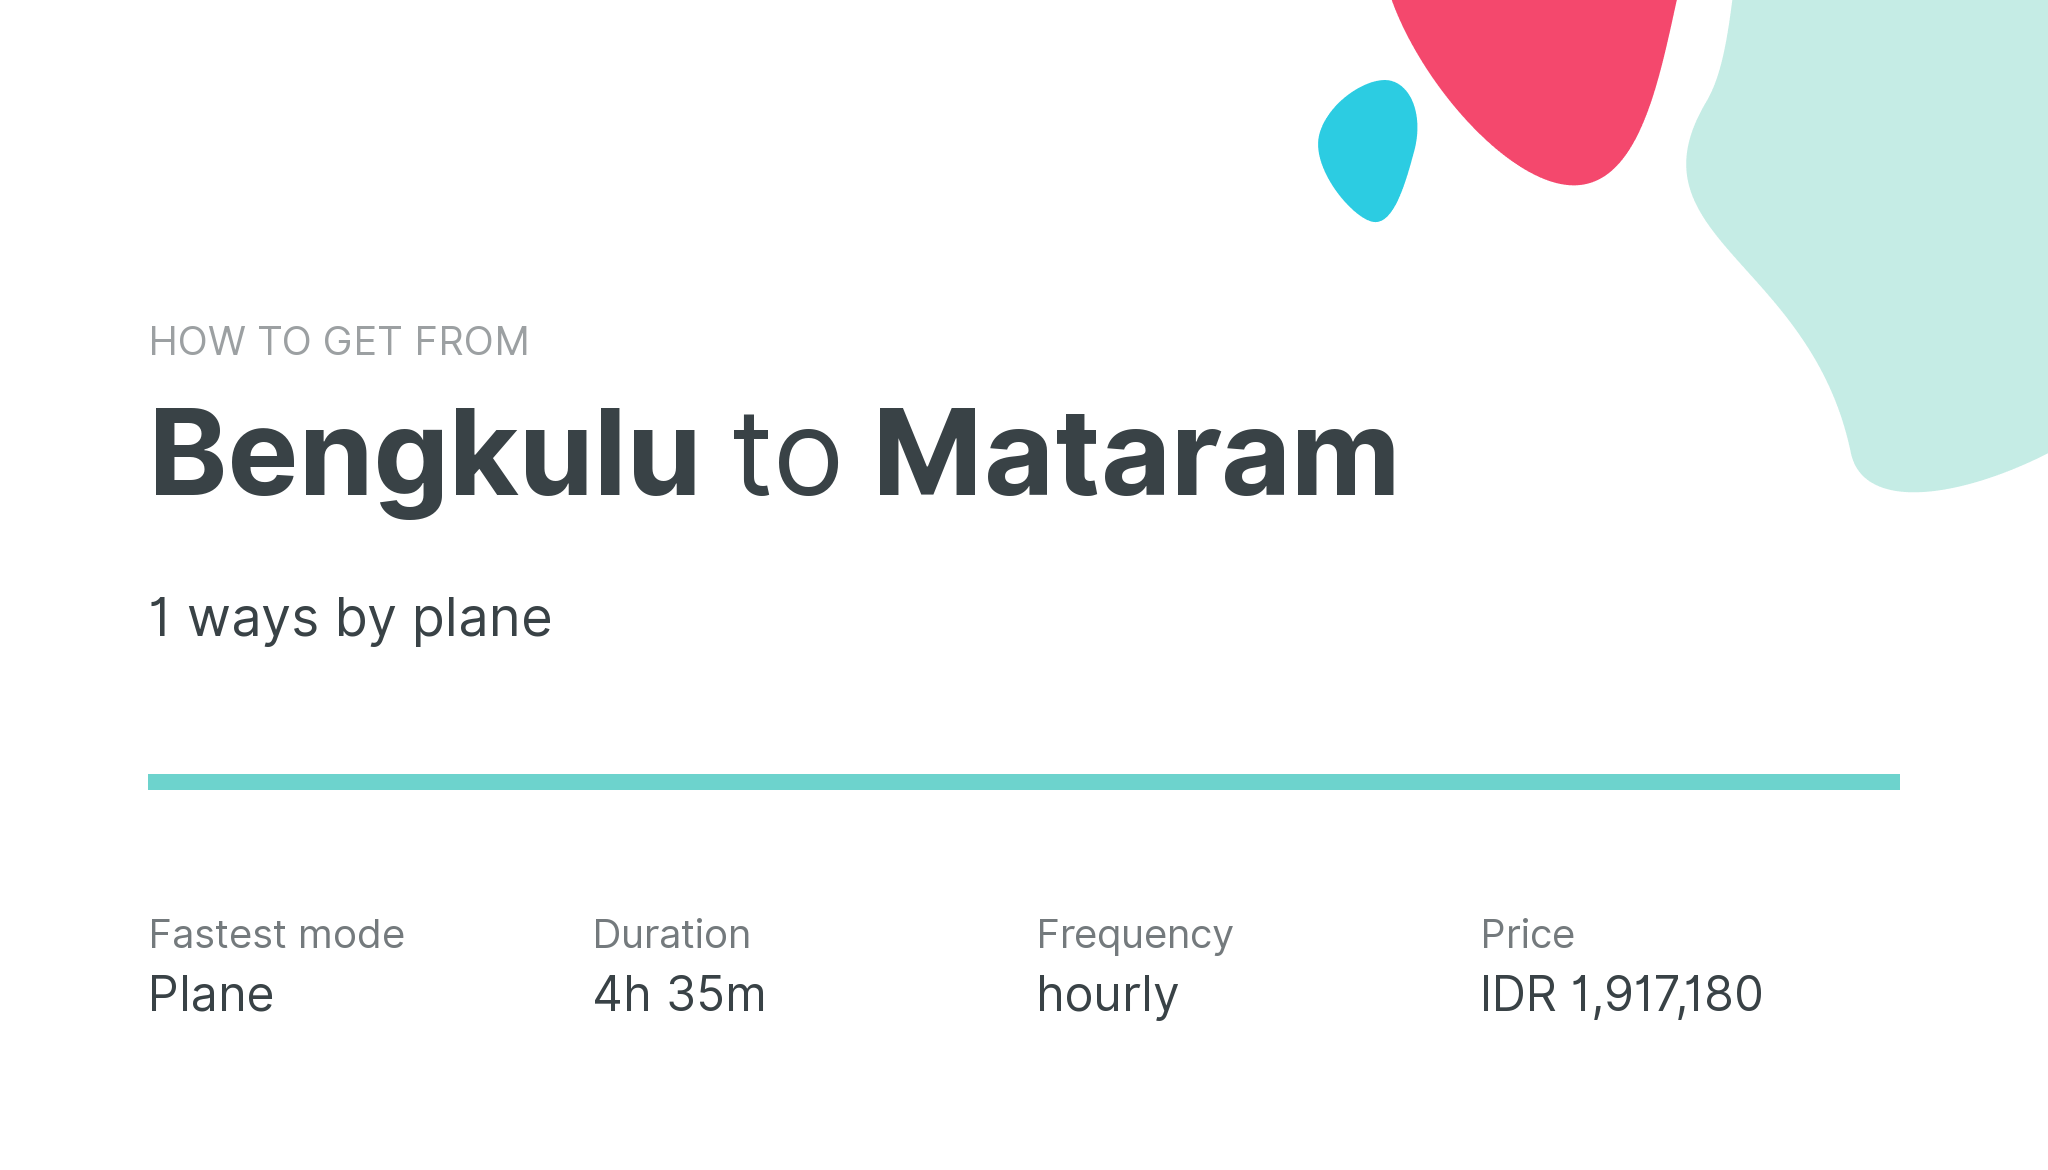 How do I get from Bengkulu to Mataram